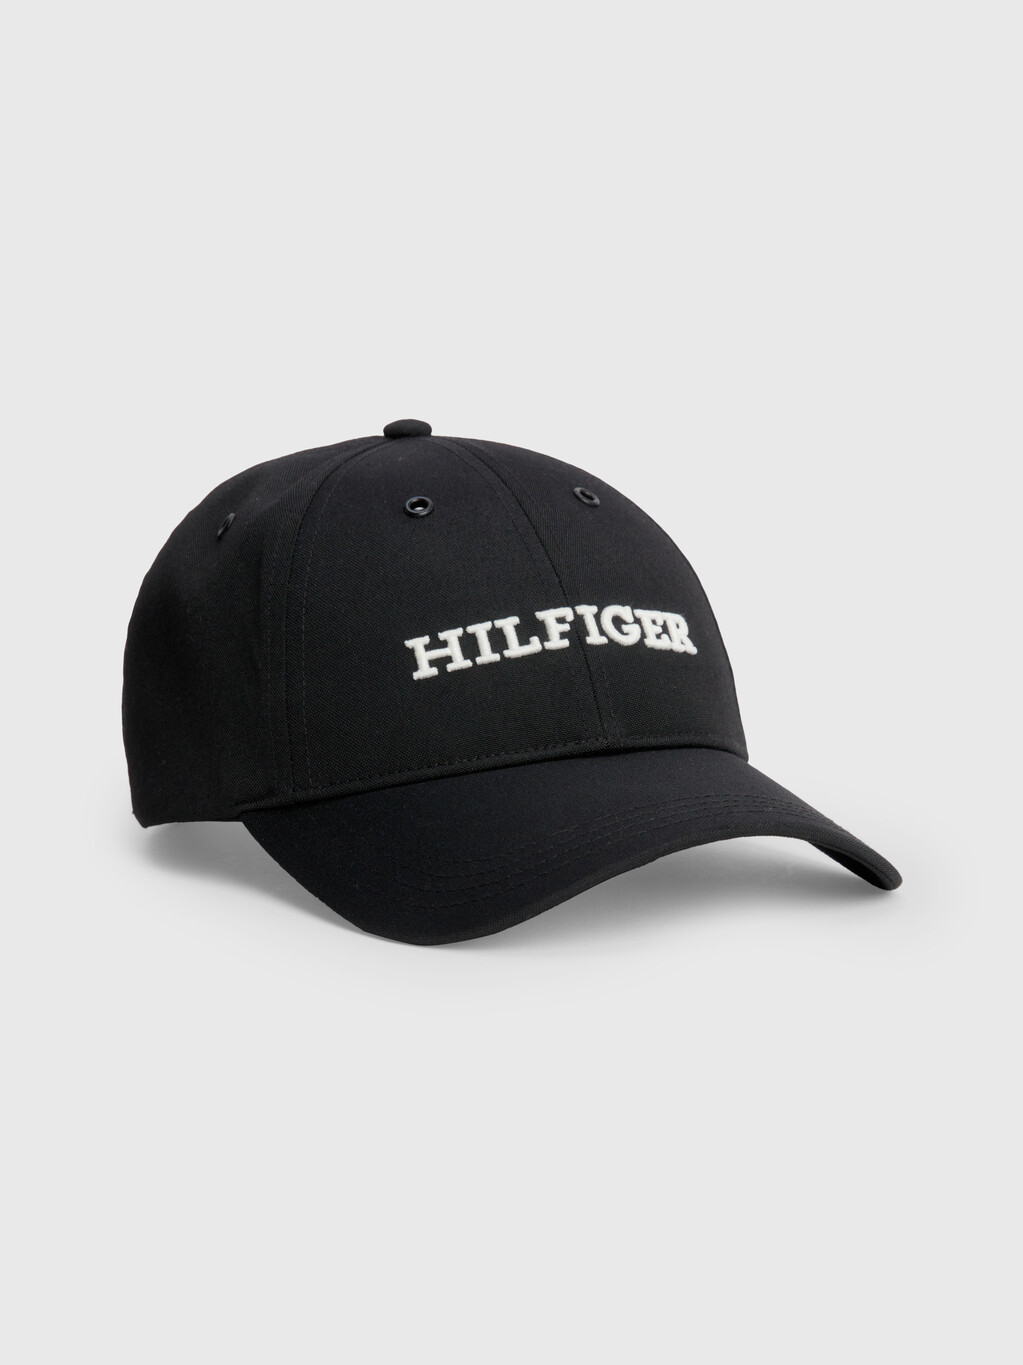 標誌貼花棒球帽, Black, hi-res